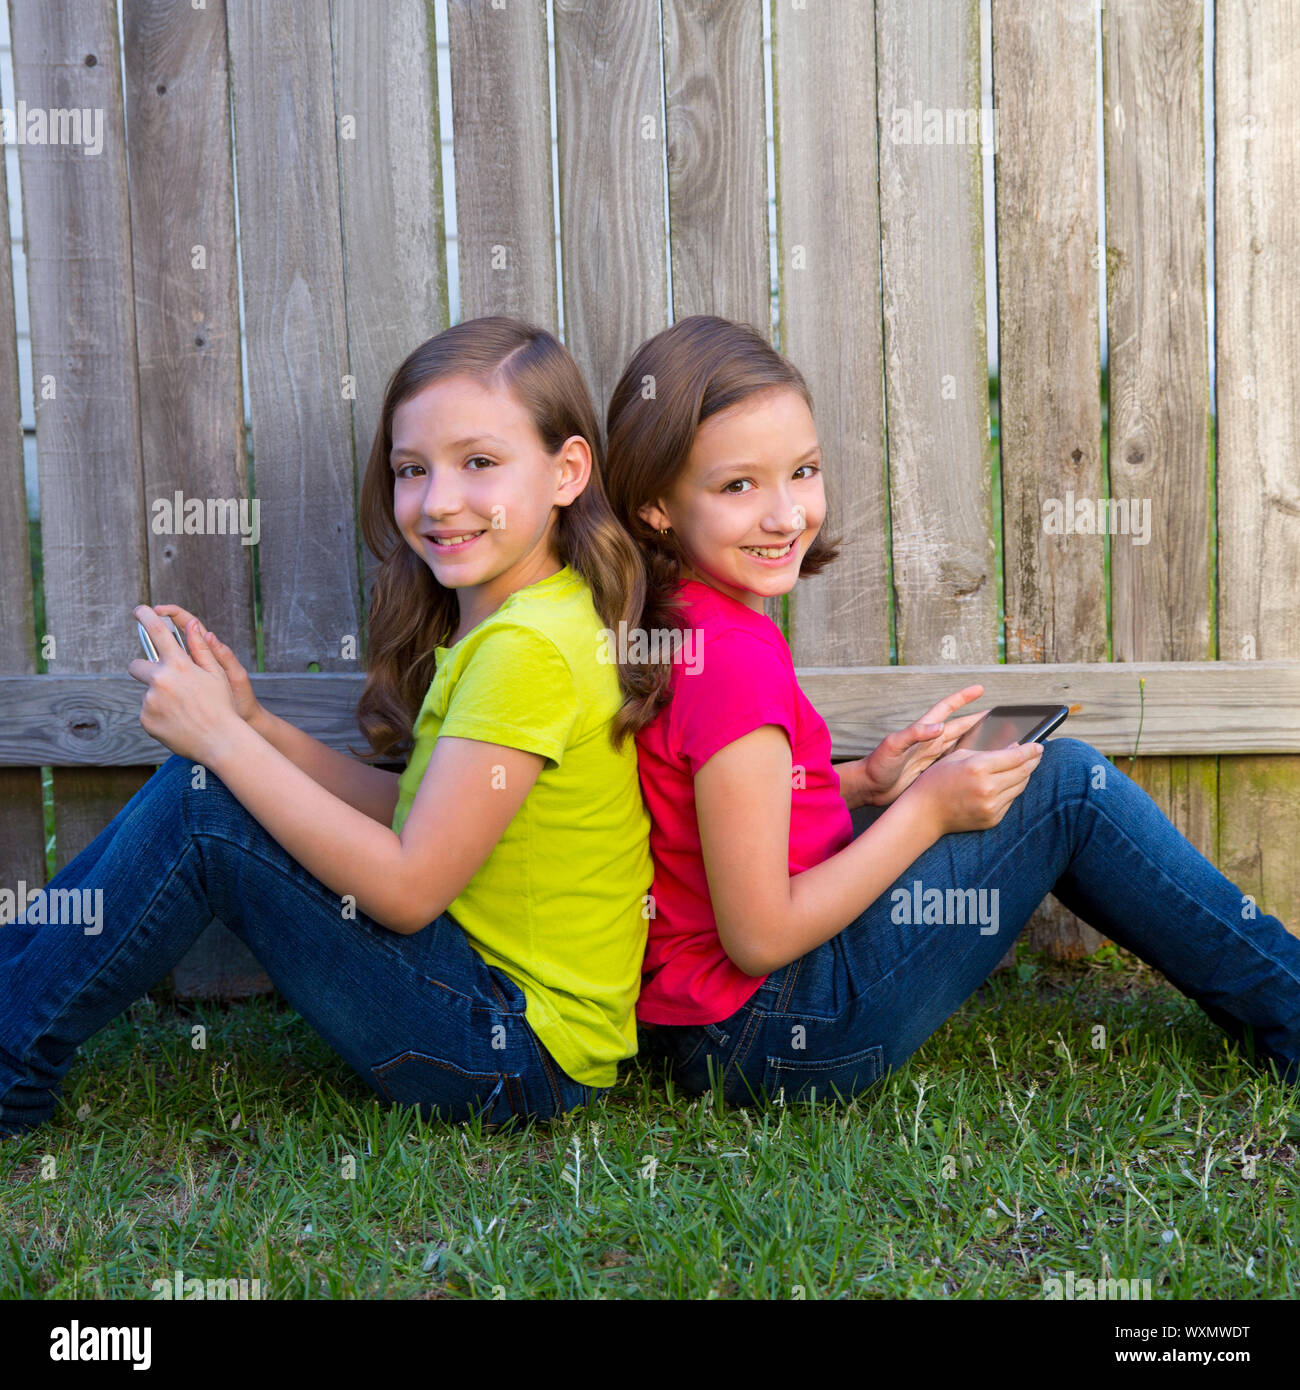 Little girl sisters. Девочки во дворе. Девочки подростки во дворе. Двойняшки девочки на лужайке фото. Играем с сестрой на даче.